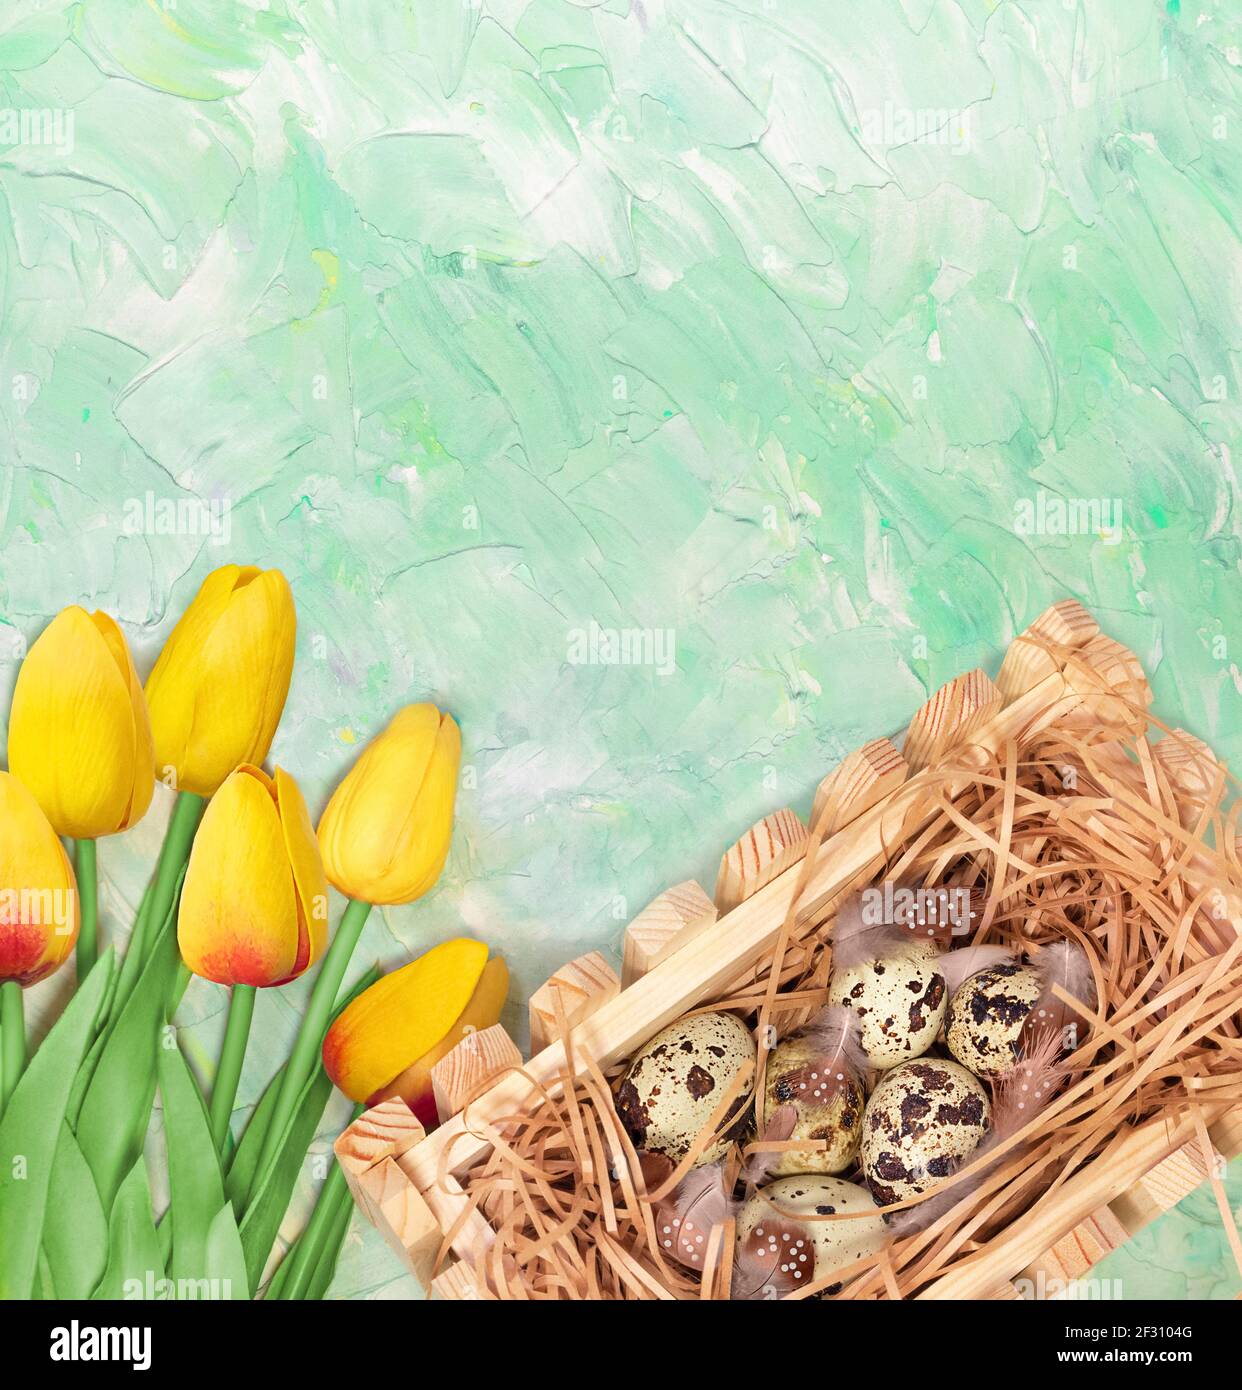 Bouquet de tulipes jaunes et nid avec œufs de caille sur fond vert menthe. Carte postale pour Pâques ou le printemps. Copier l'espace Banque D'Images